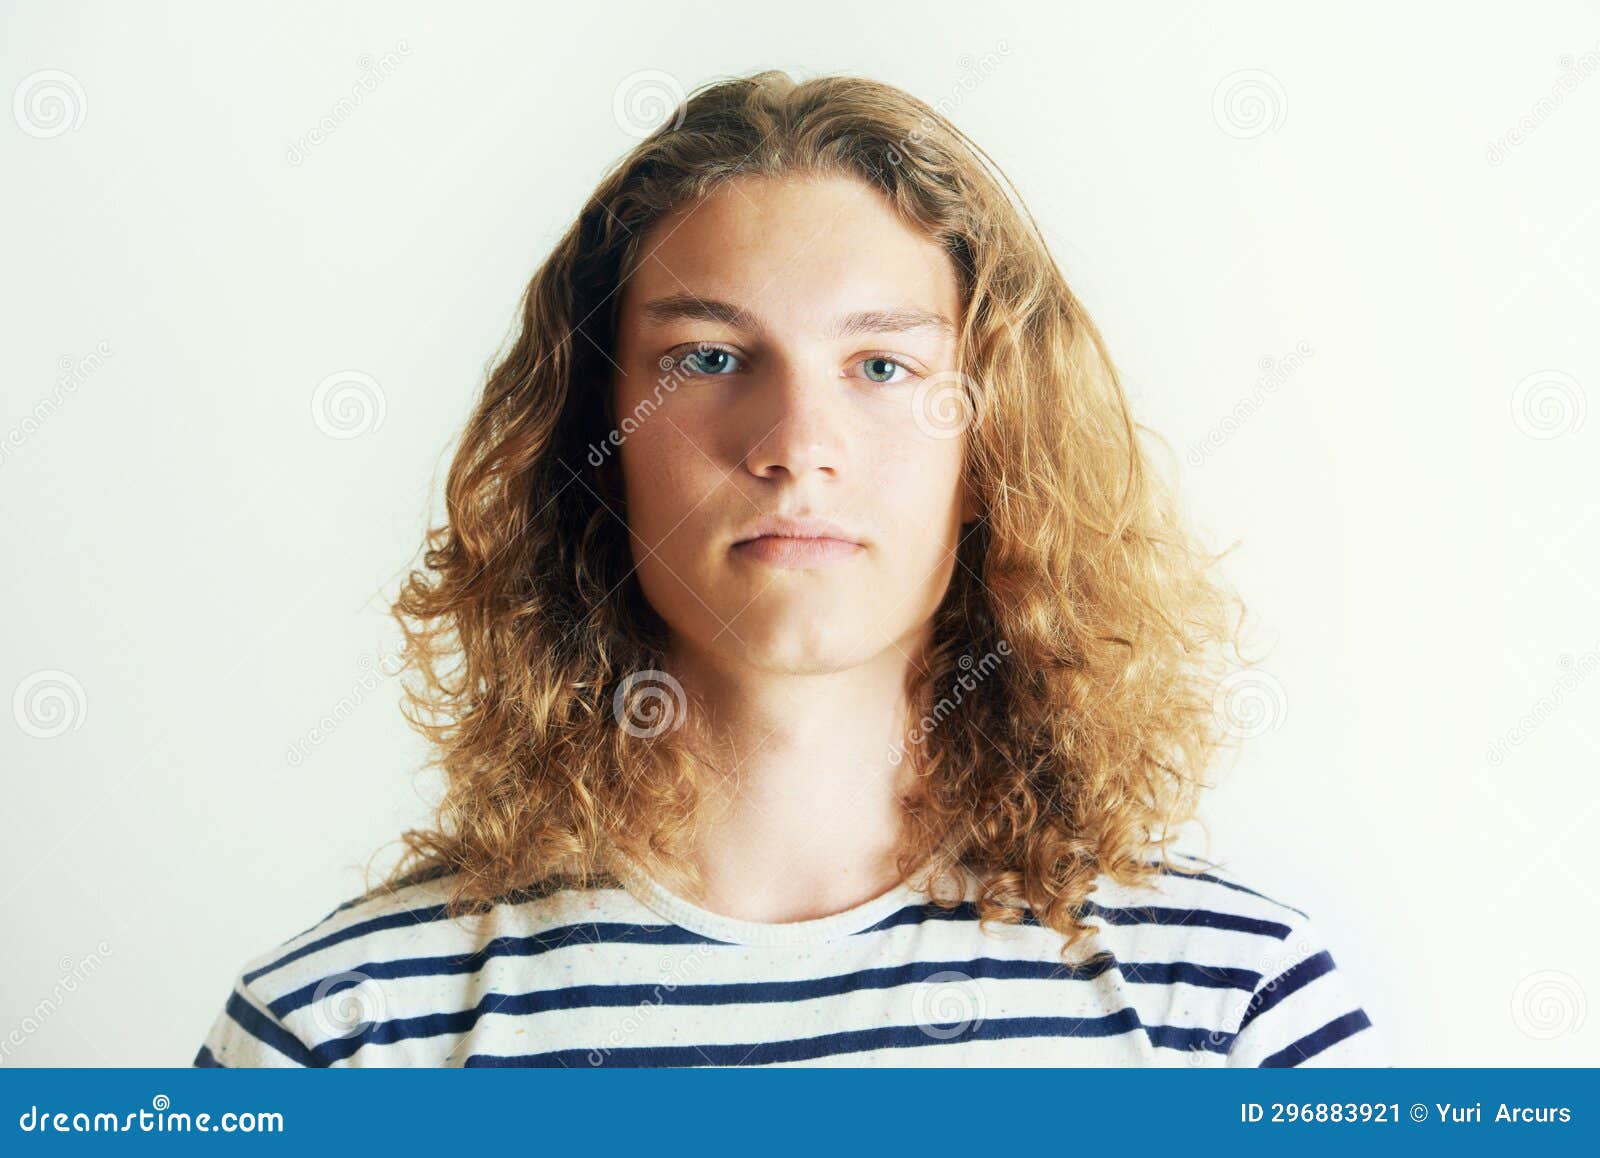 Retrato de um punk com cabelo colorido homem hipster com cabelo